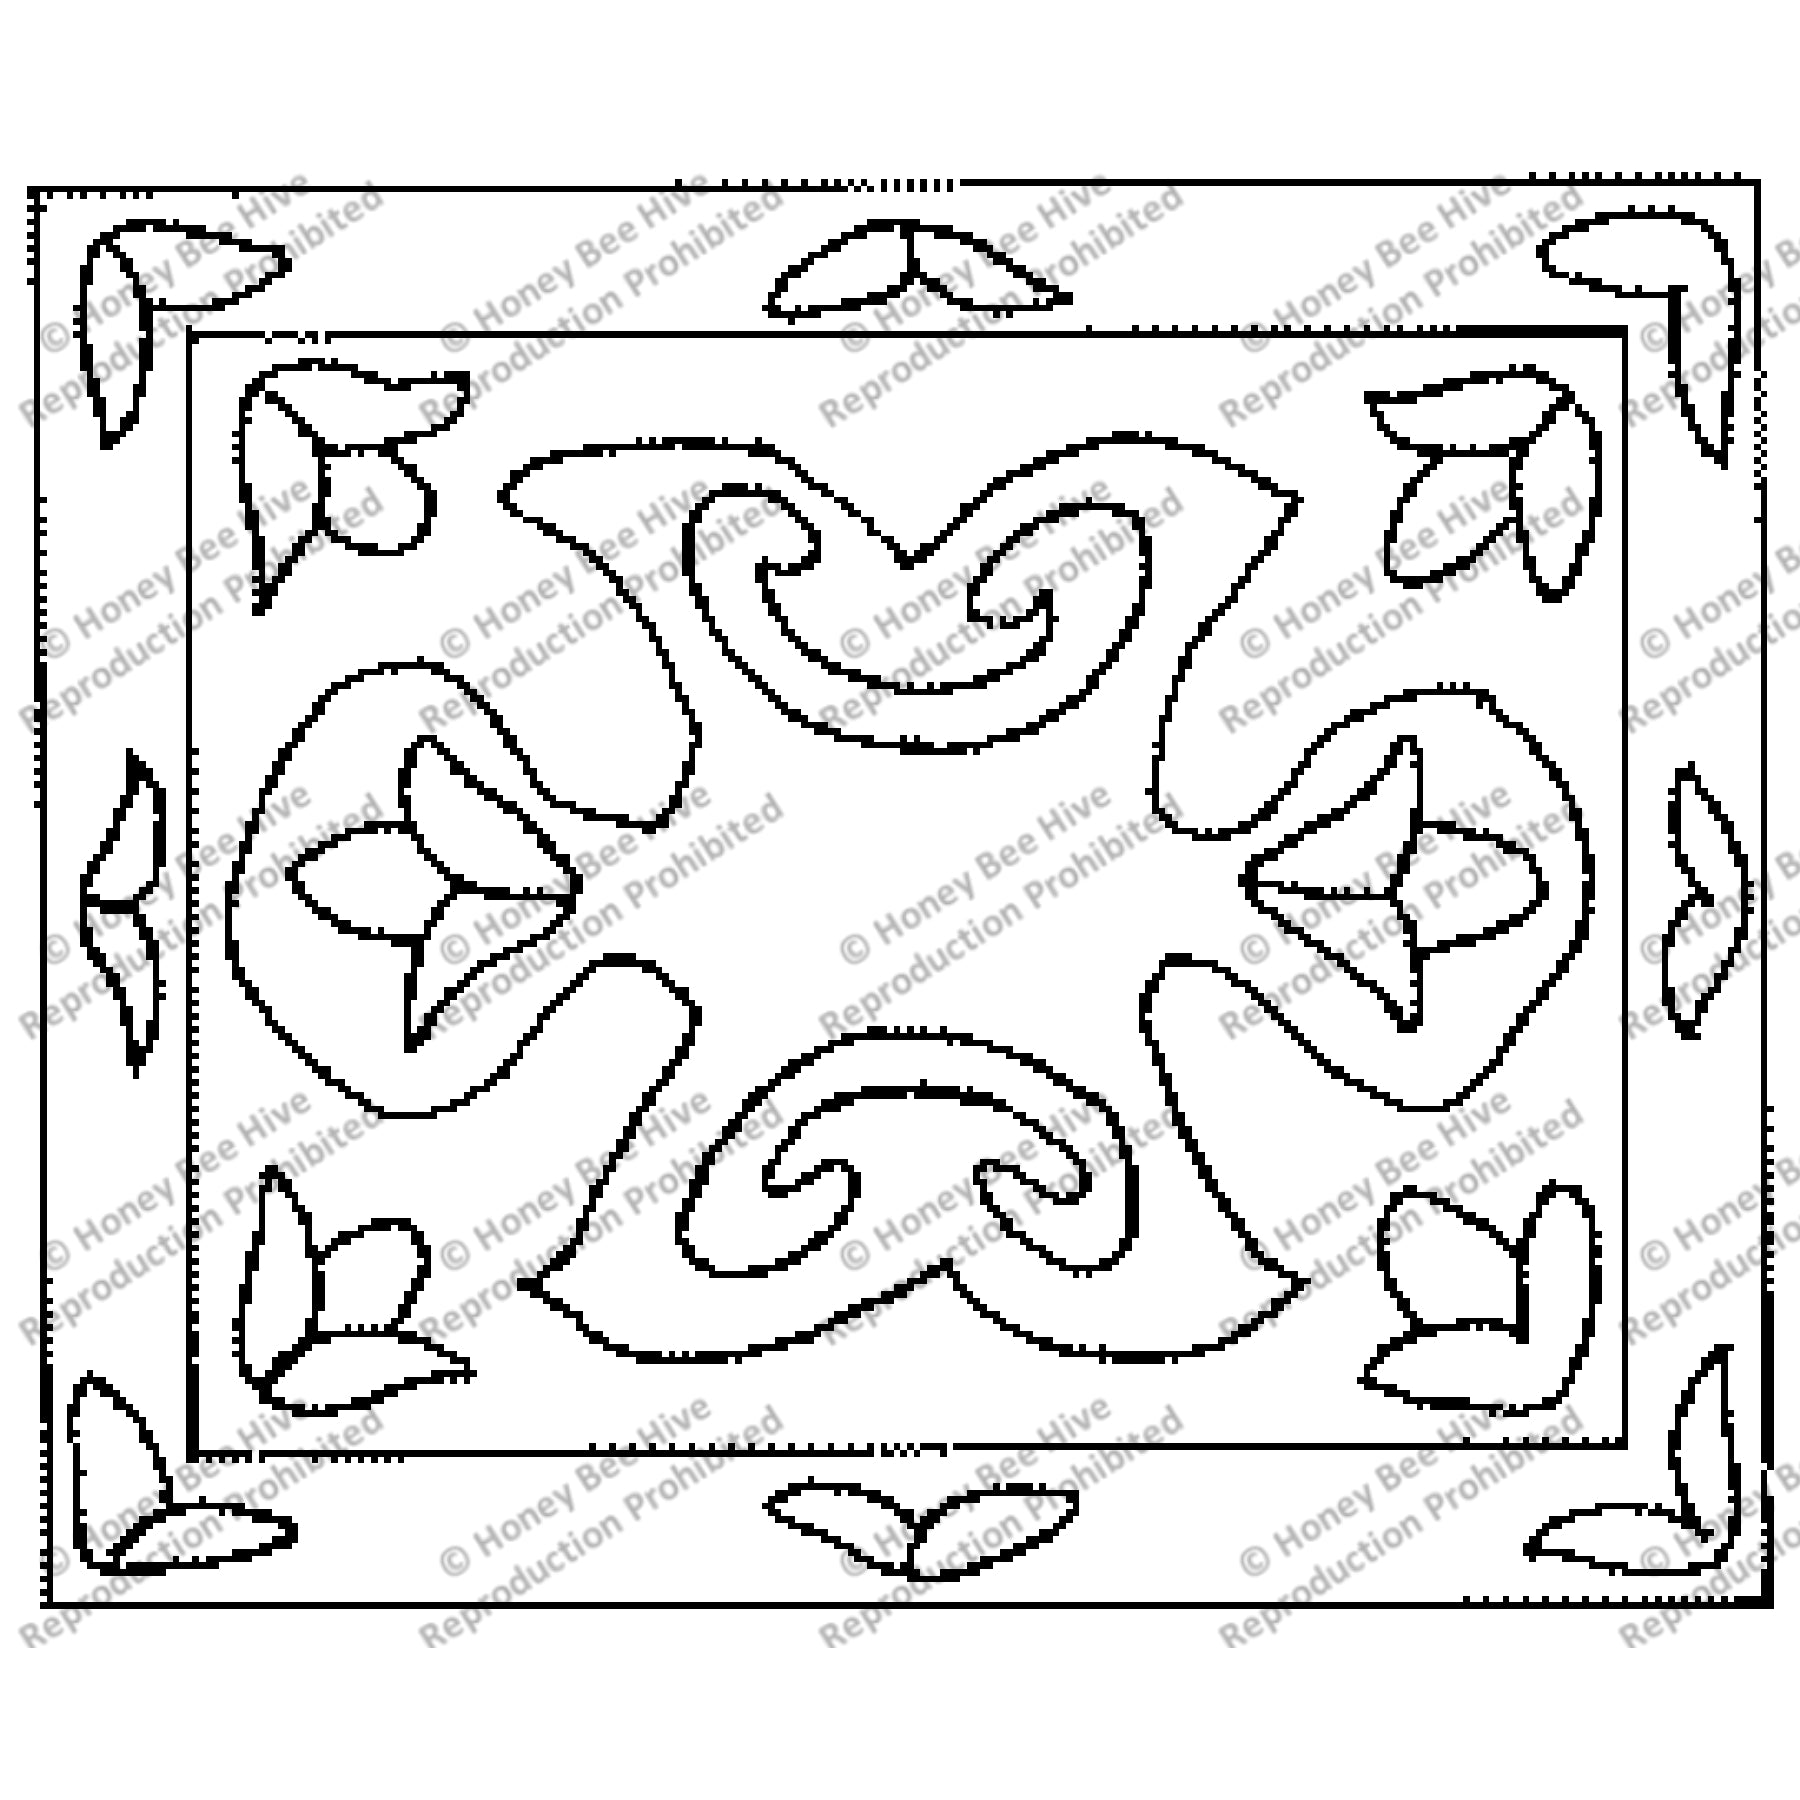 Oriental, rug hooking pattern